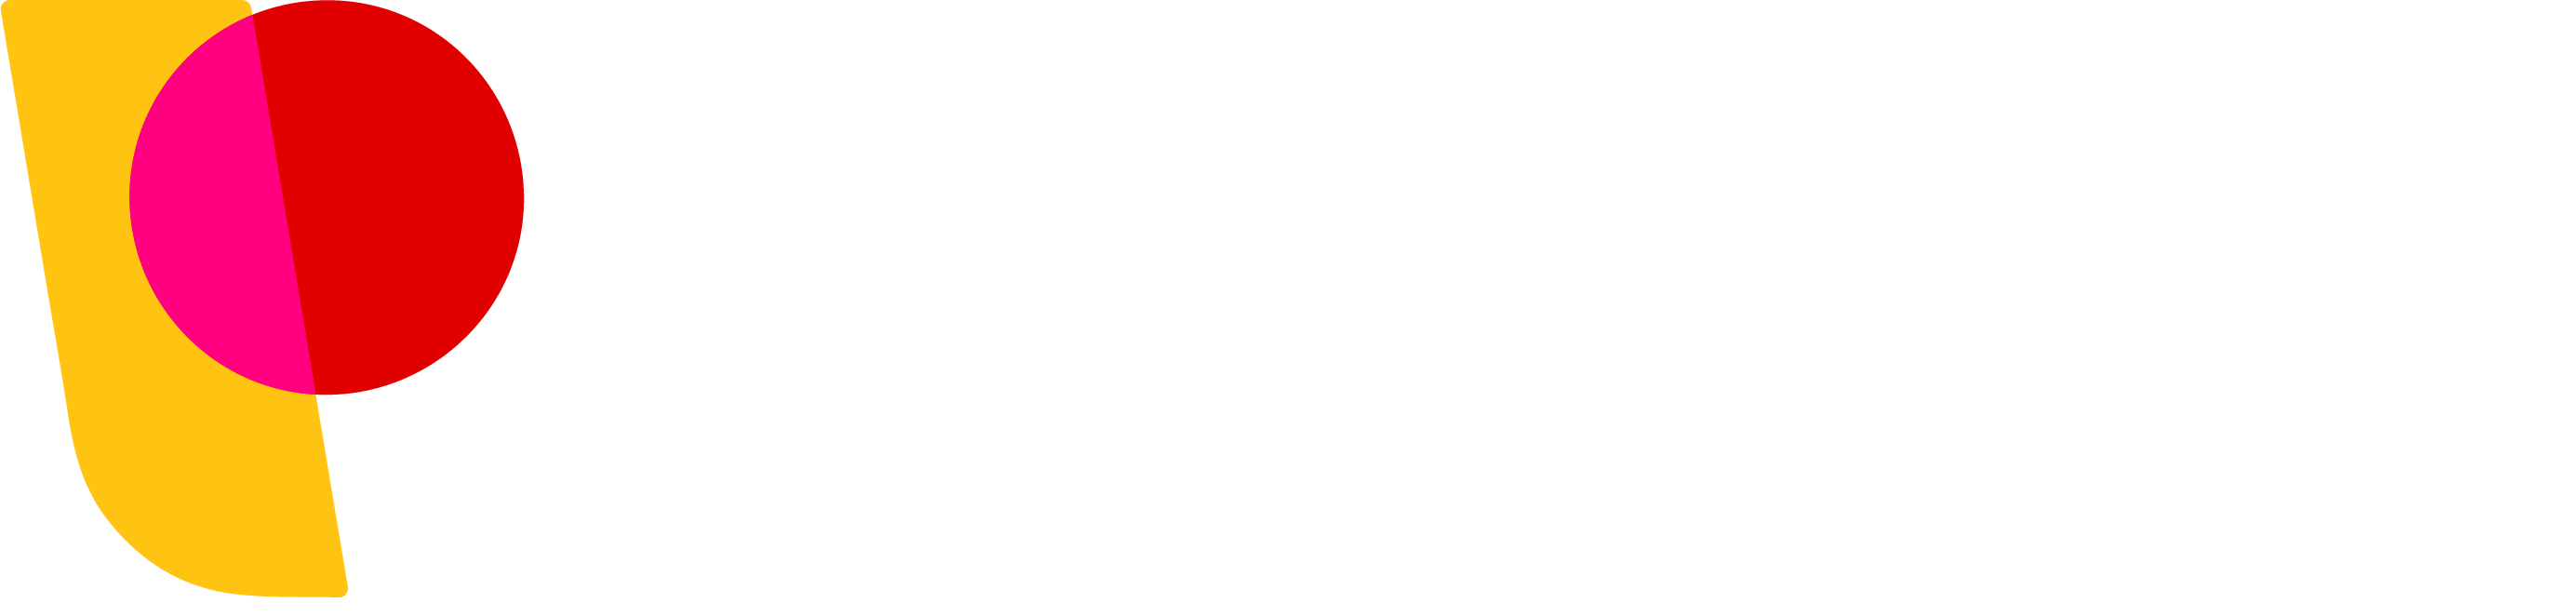 Partners Relief & Development